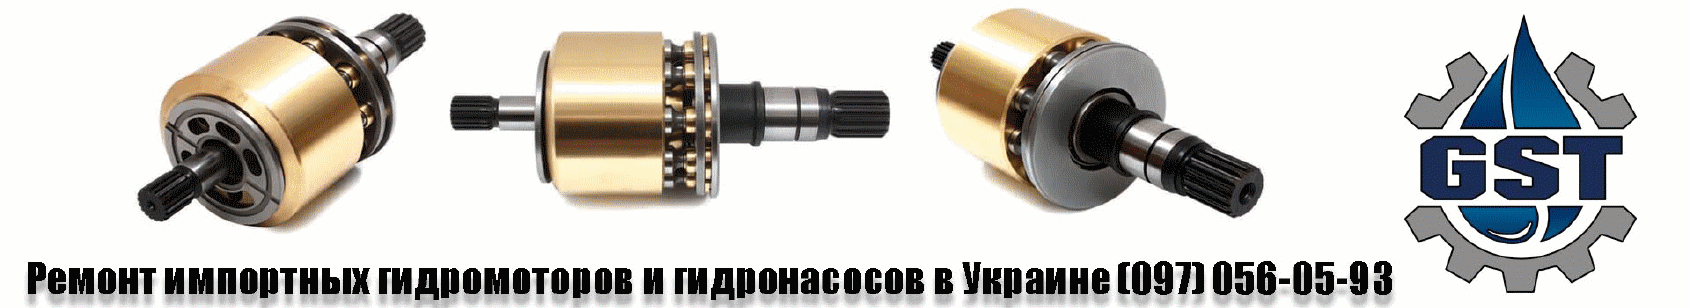 Ремонт импортных гидромоторов и гидронасосов в Украине